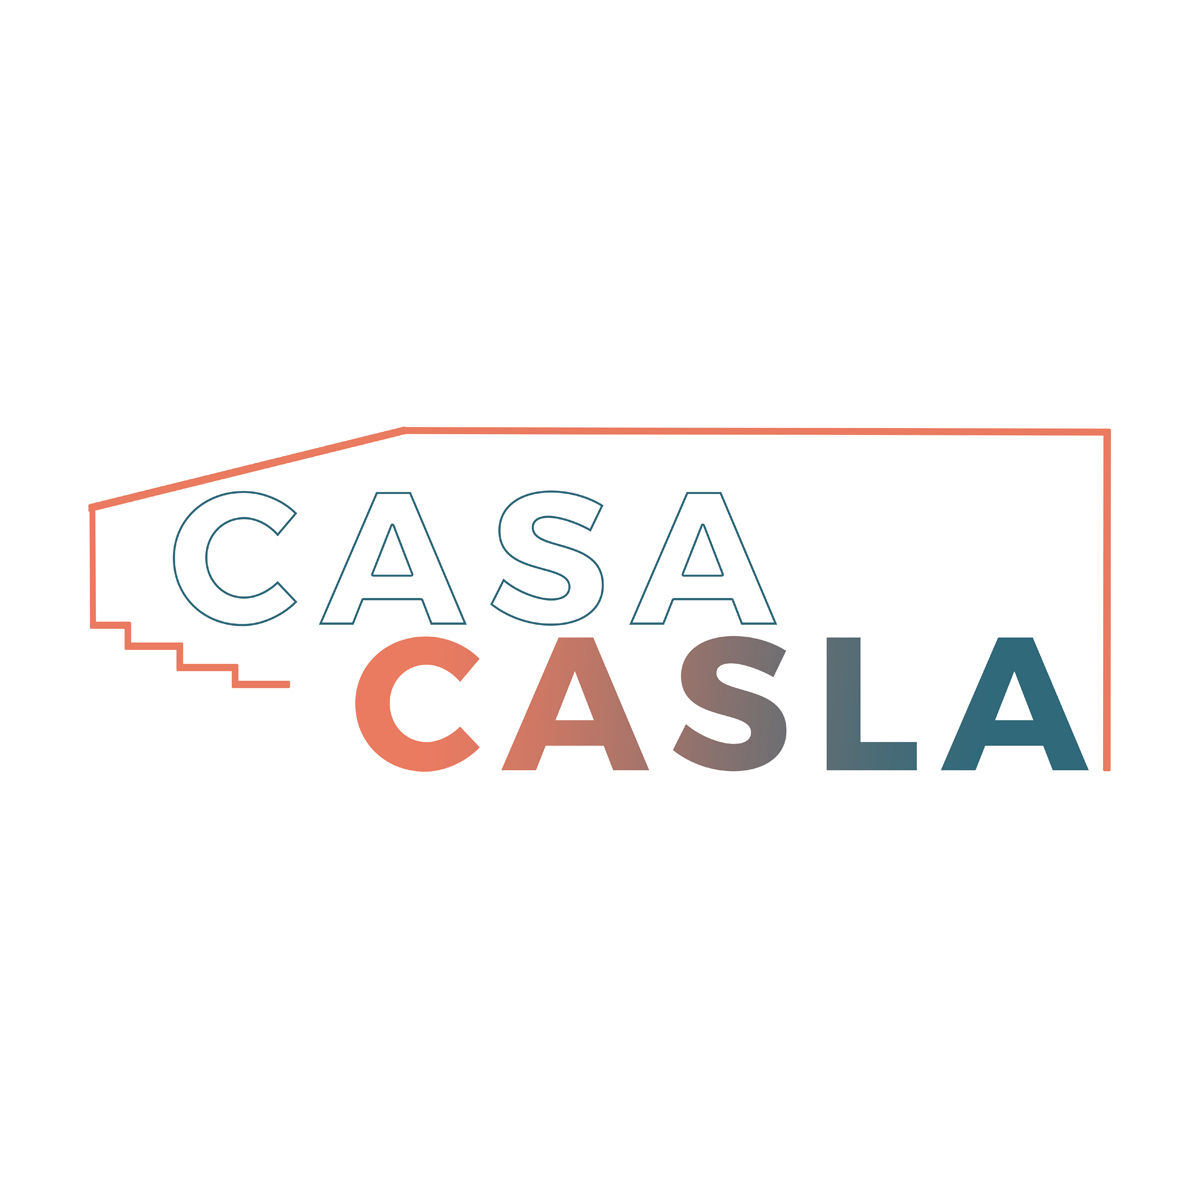 Casa Casla